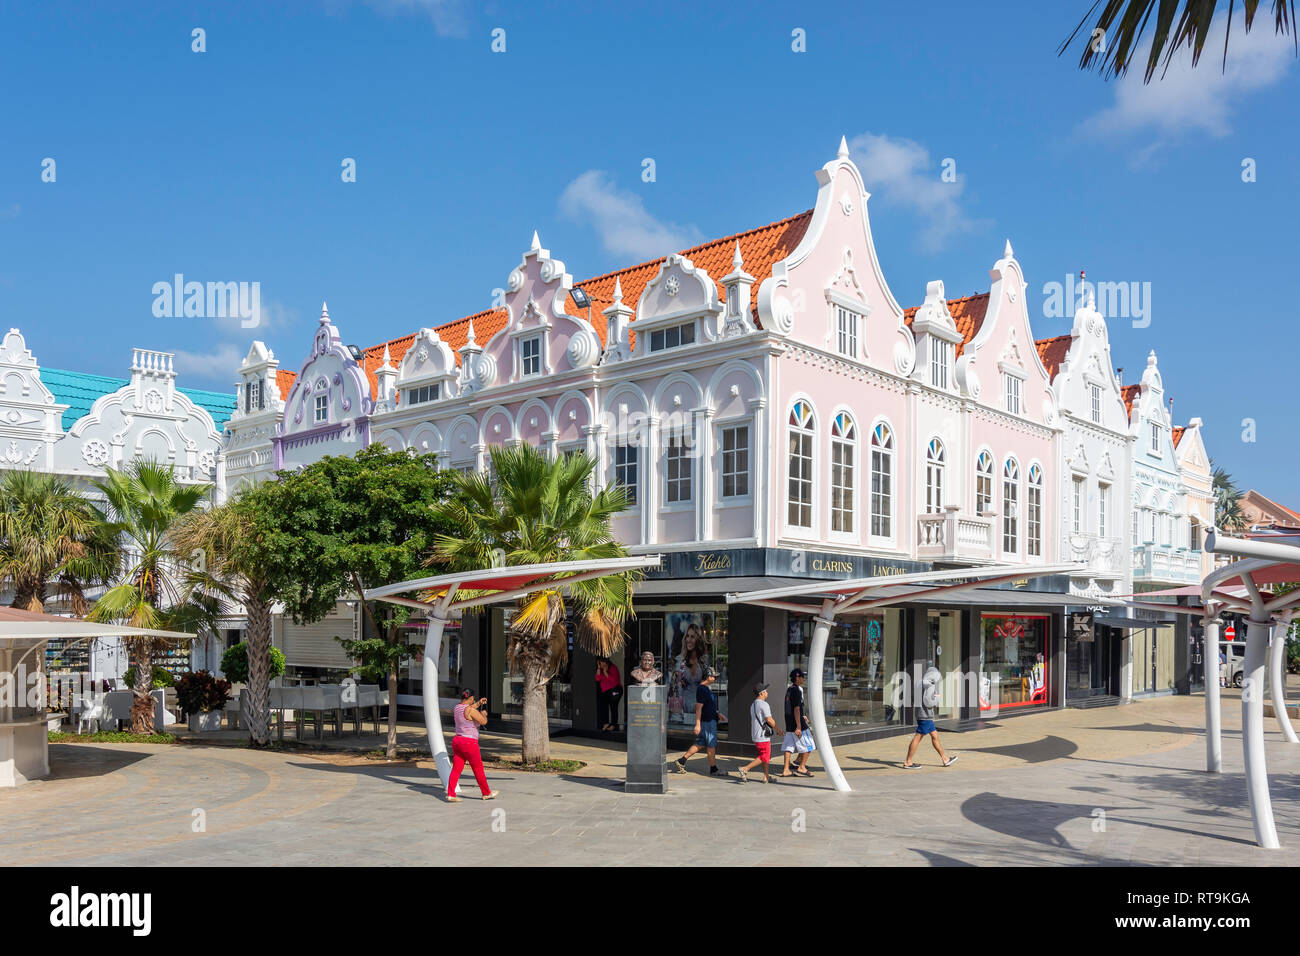 Plaza Daniel Leo mostra olandese di edifici in stile coloniale, Oranjestad, Aruba, Isole ABC, Leeward Antilles, dei Caraibi Foto Stock